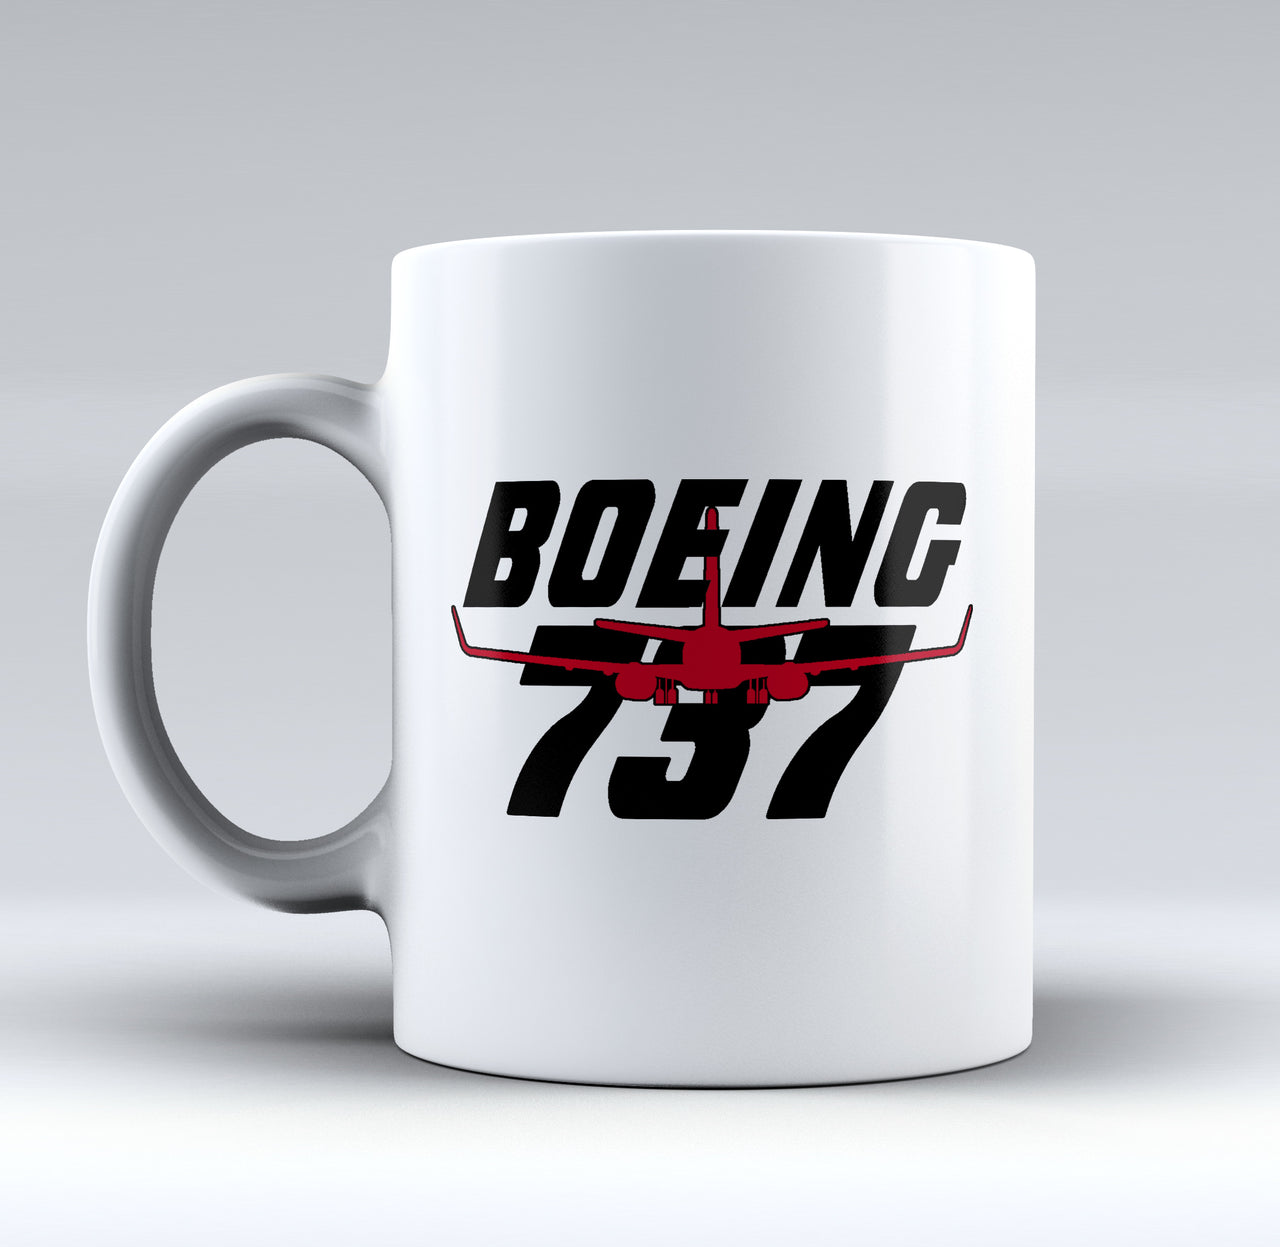 Amazing Boeing 737 Designed Mugs